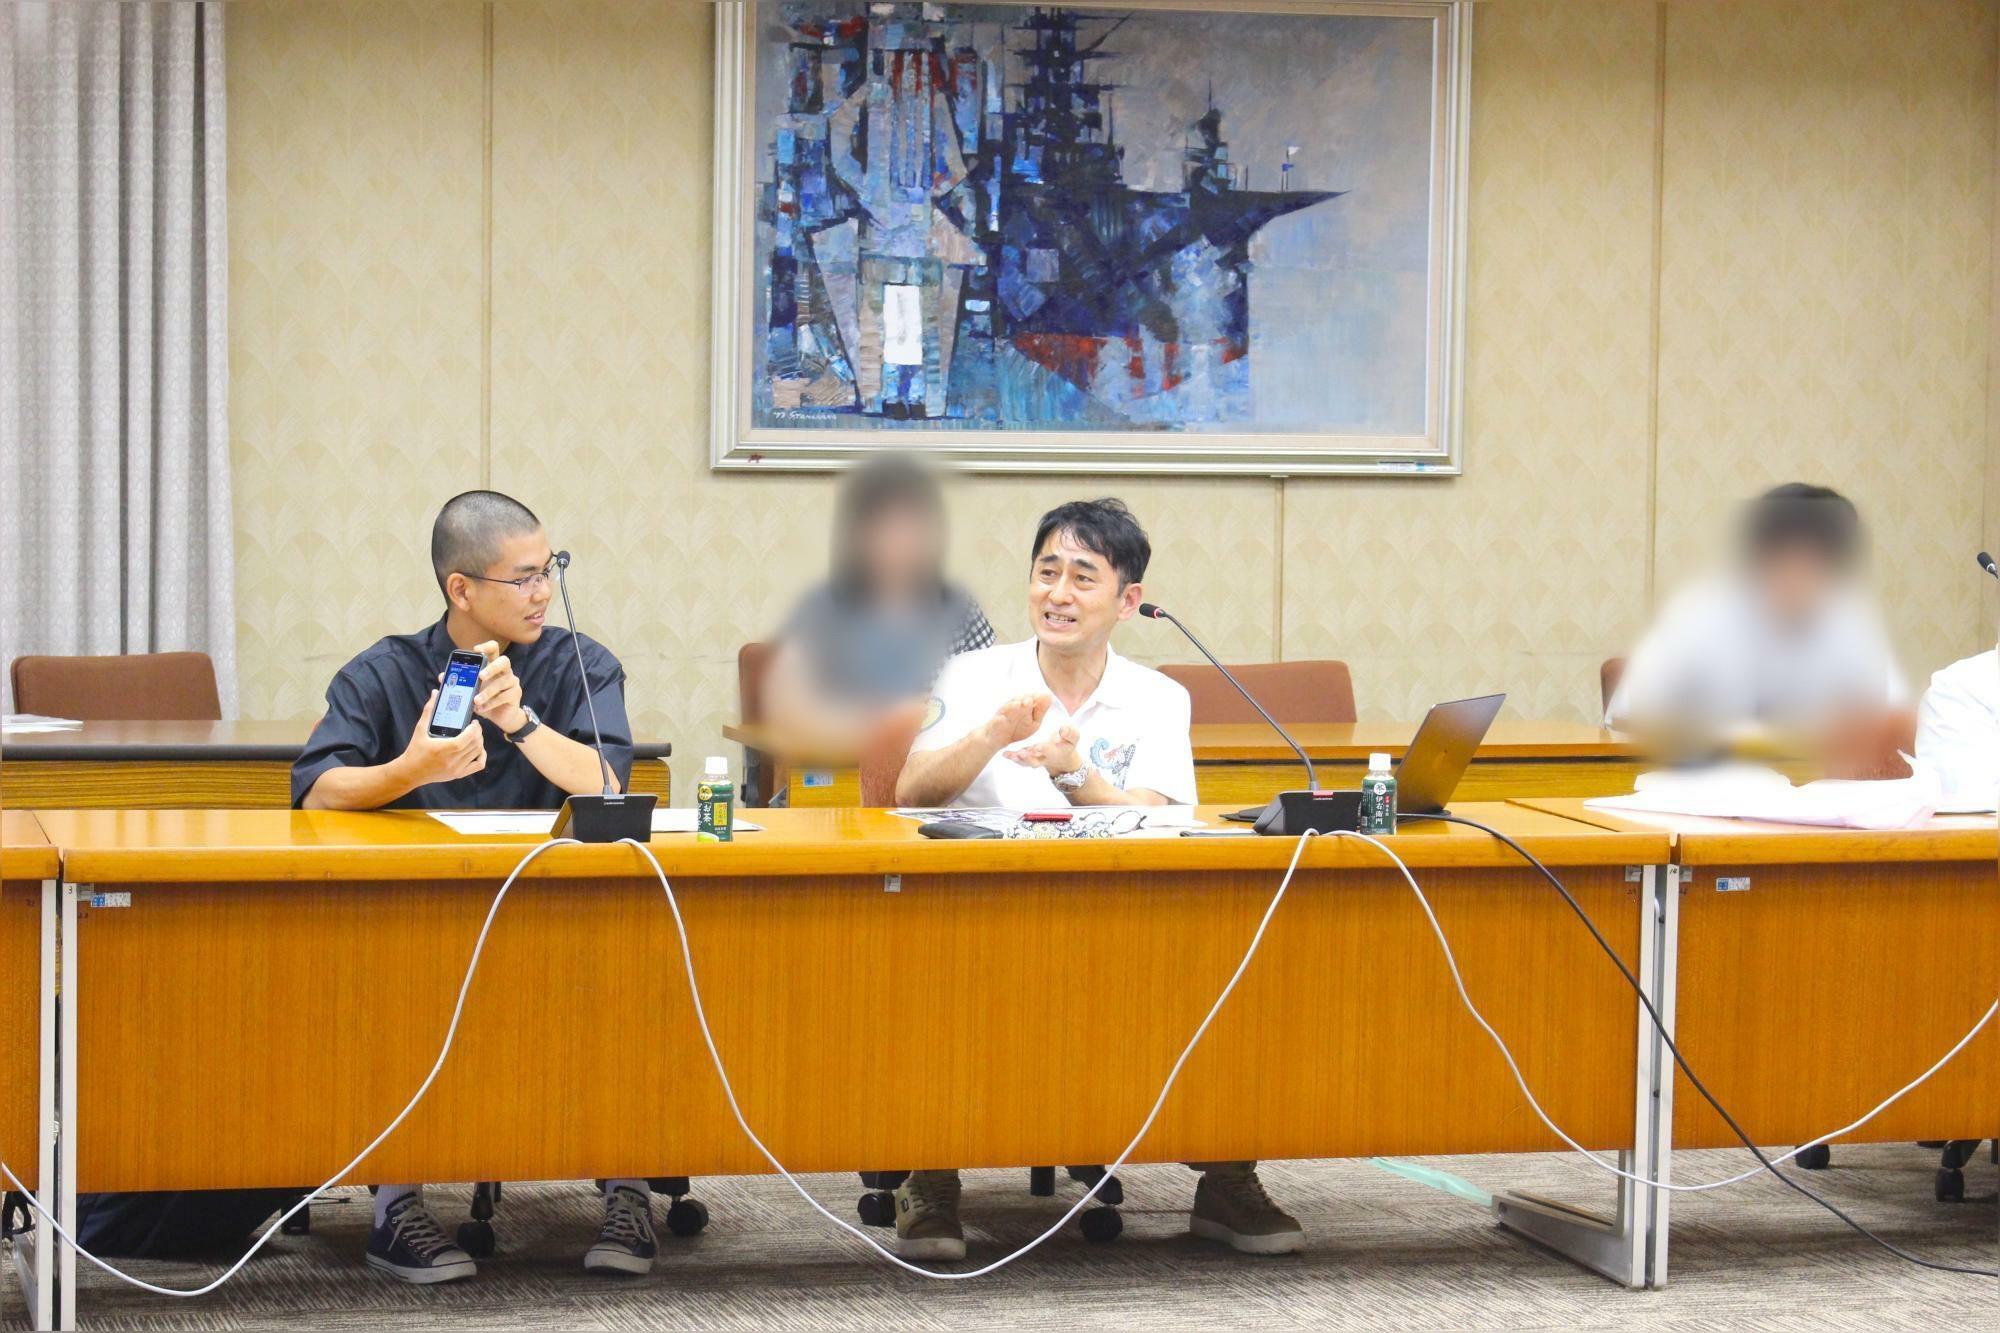 画面中央：記者会見にてアプリの説明を行う岡﨑威生 教授（琉球大学 工学部）